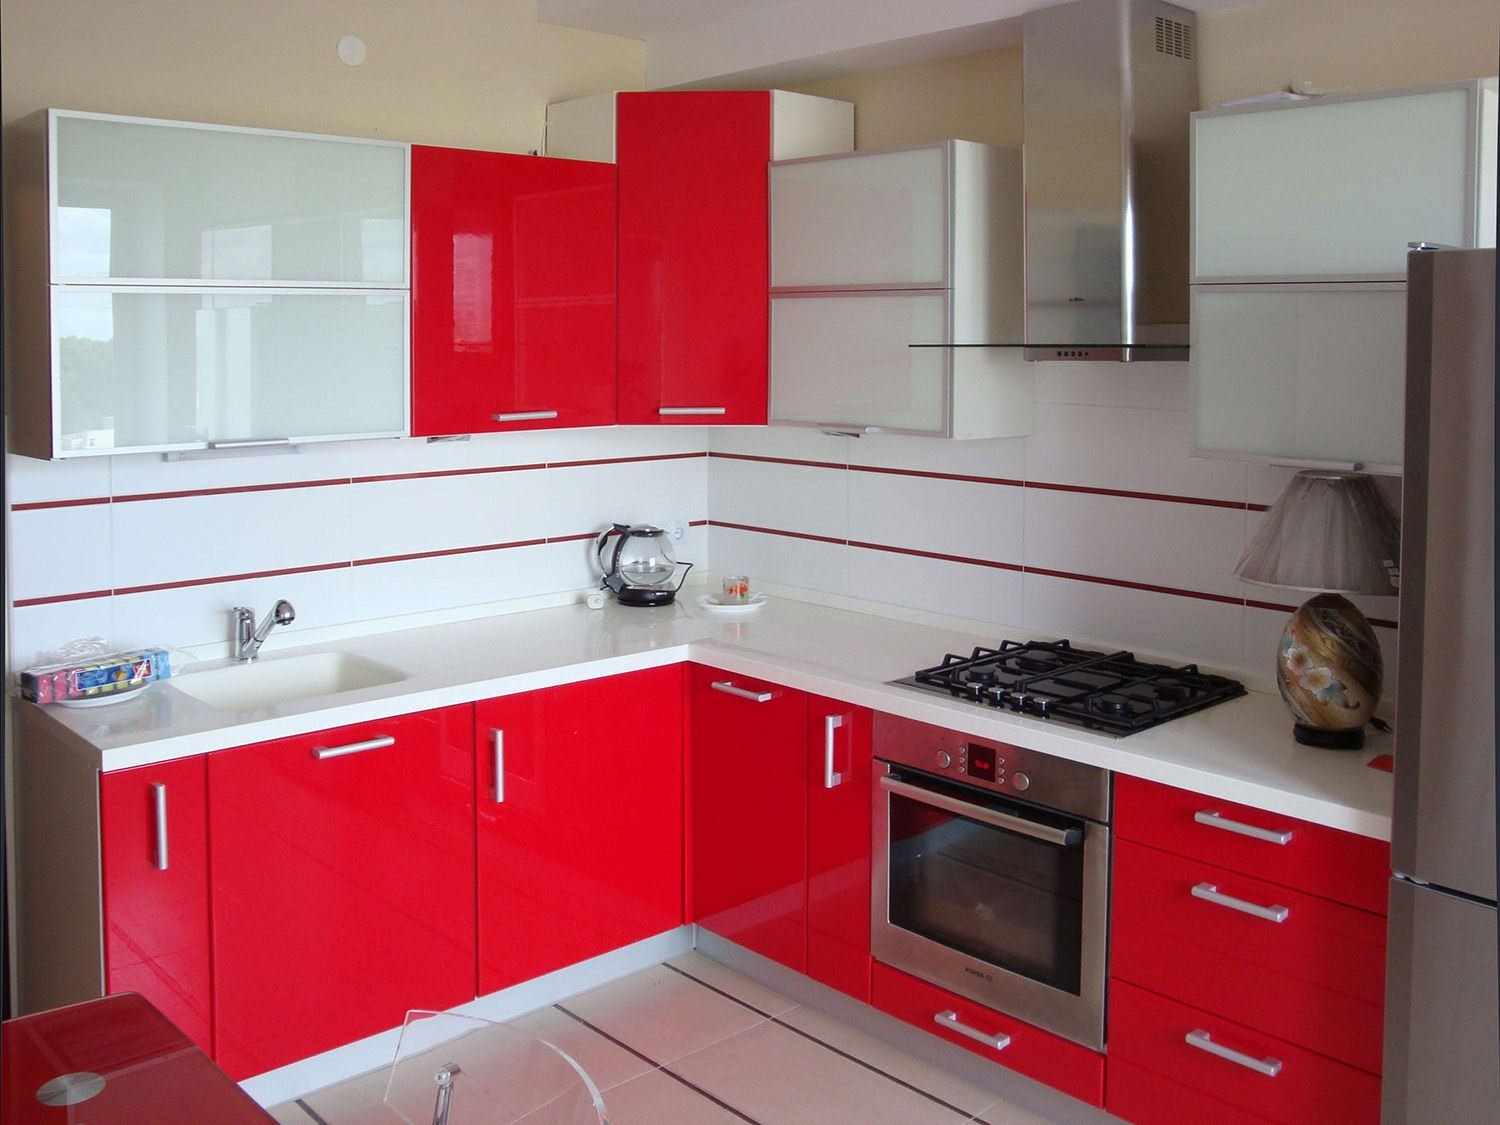 egy példa egy világos piros konyha kialakítására